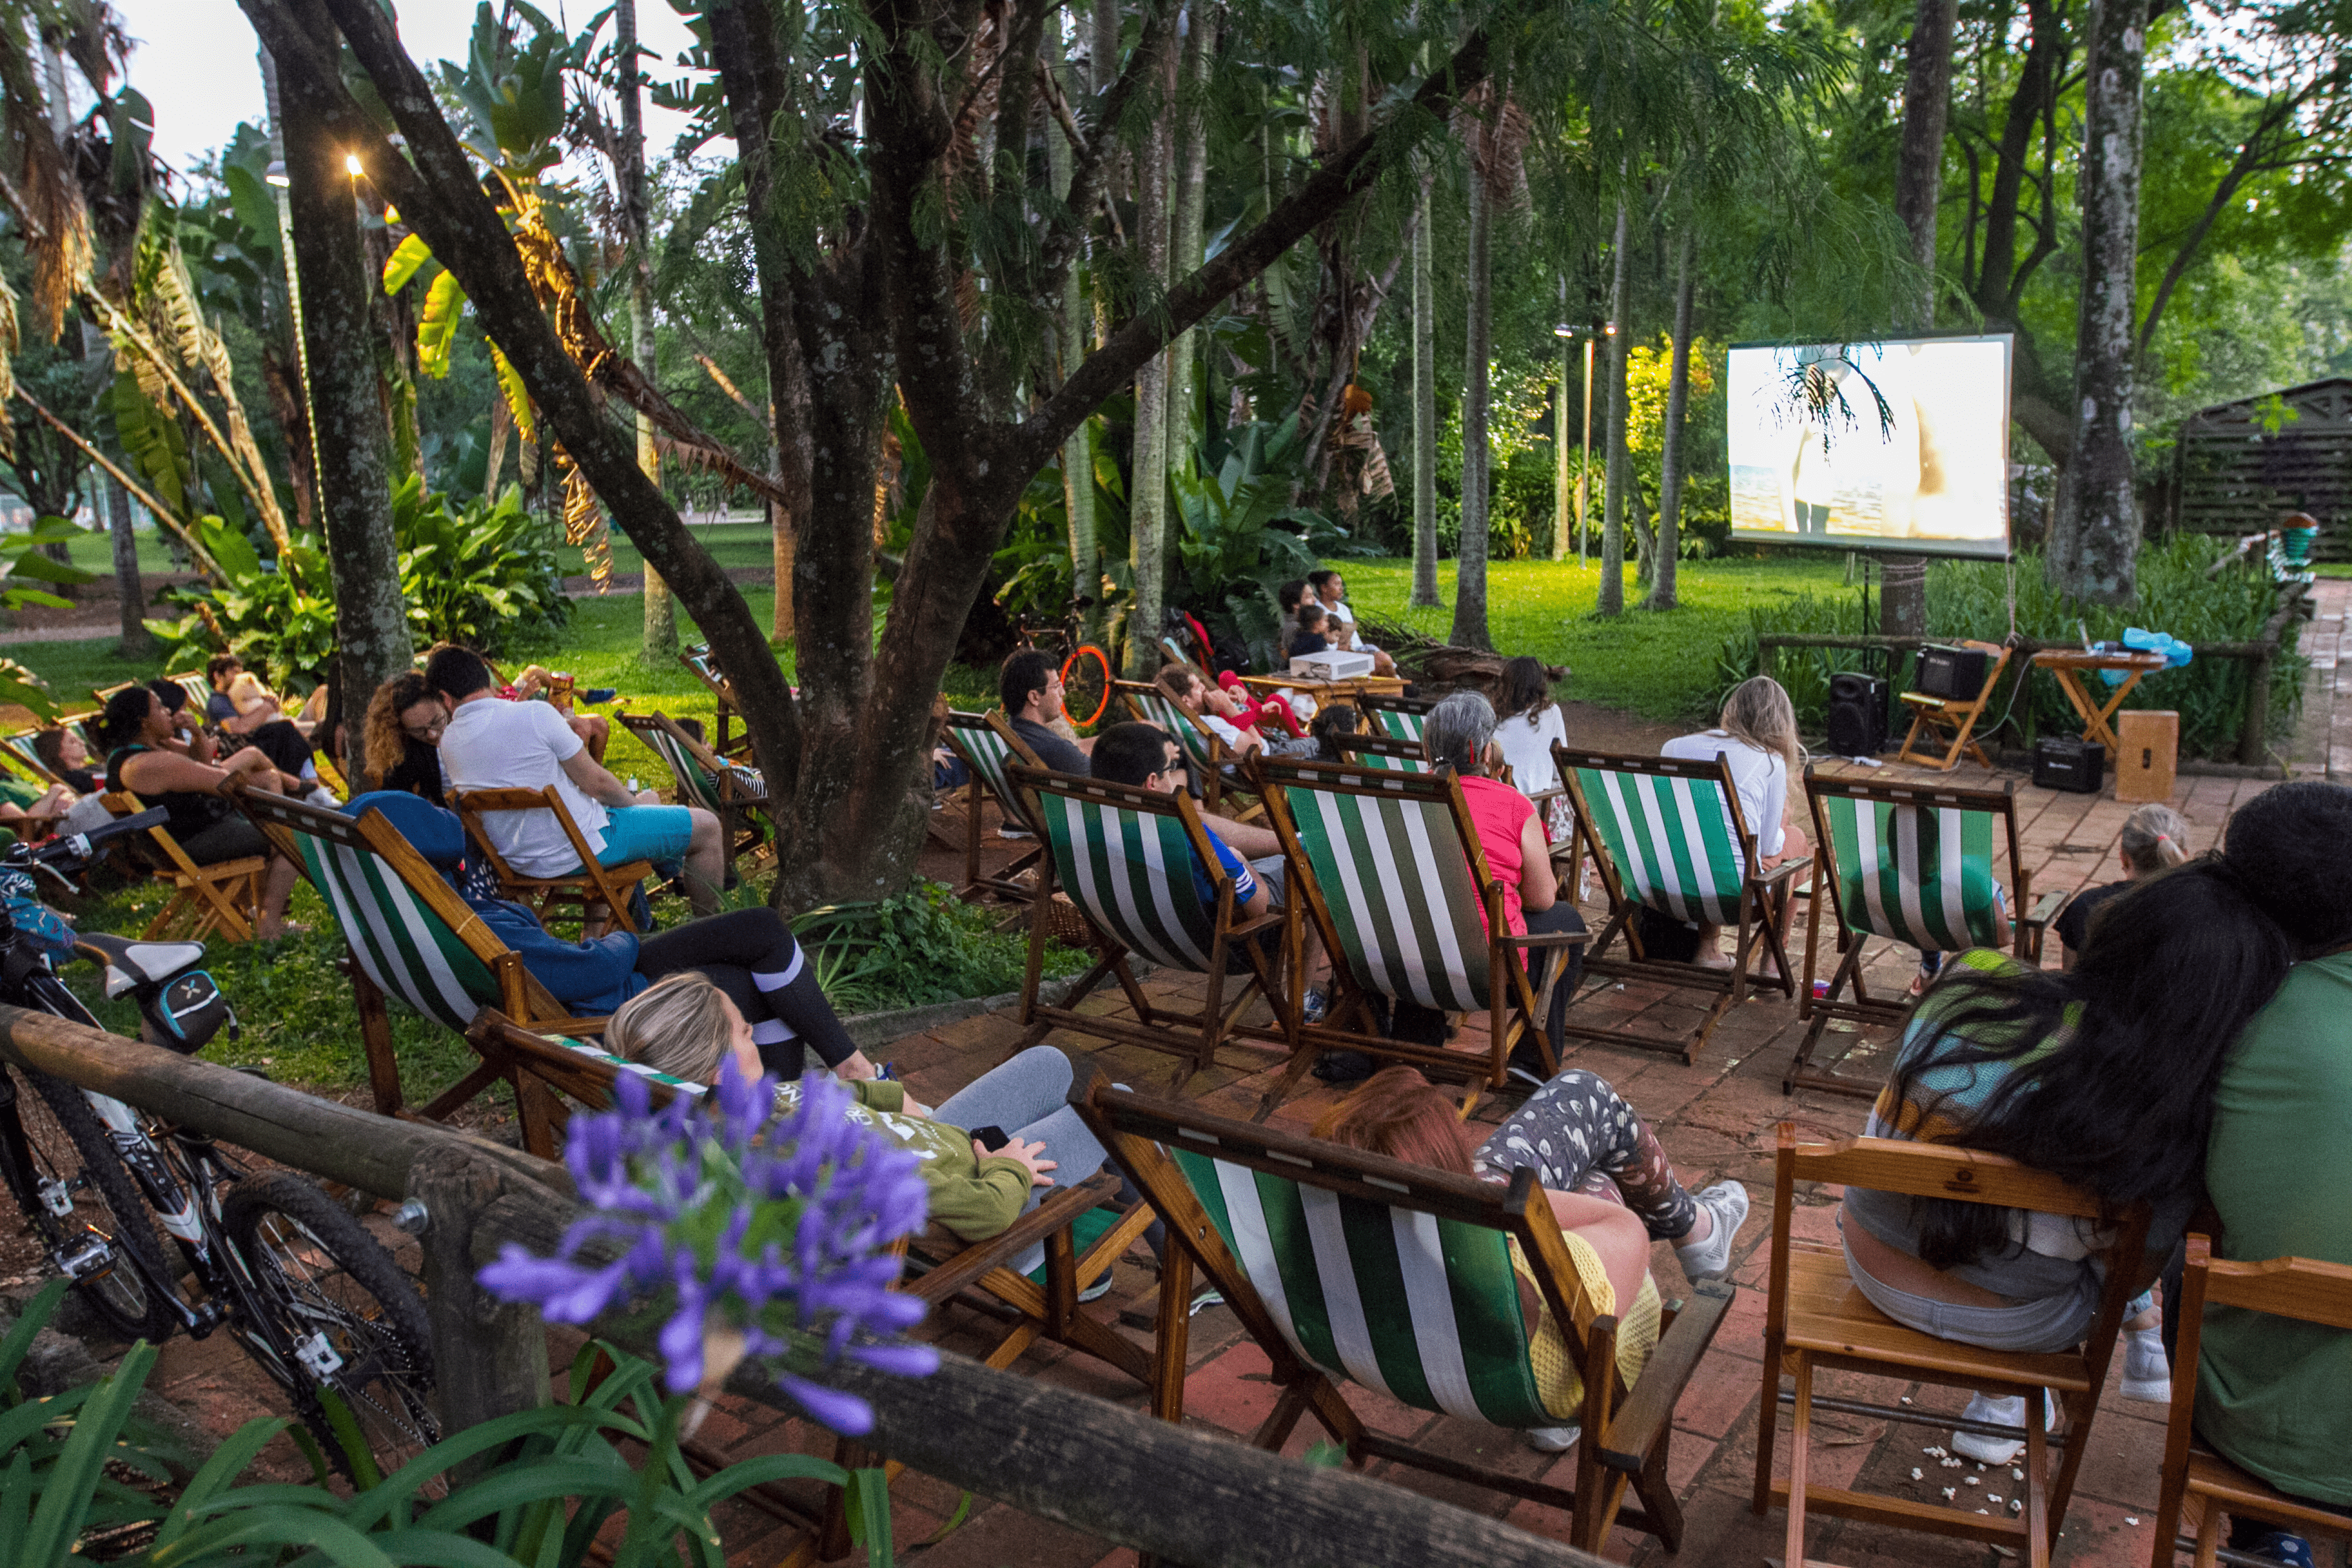 Em um jardim gramado e com \xe1rvores, no final de tarde, pessoas est\xe3o sentadas em cadeiras de praia e assistem a um filme projetado em uma tela fixada em uma das \xe1rvores do espa\xe7o.